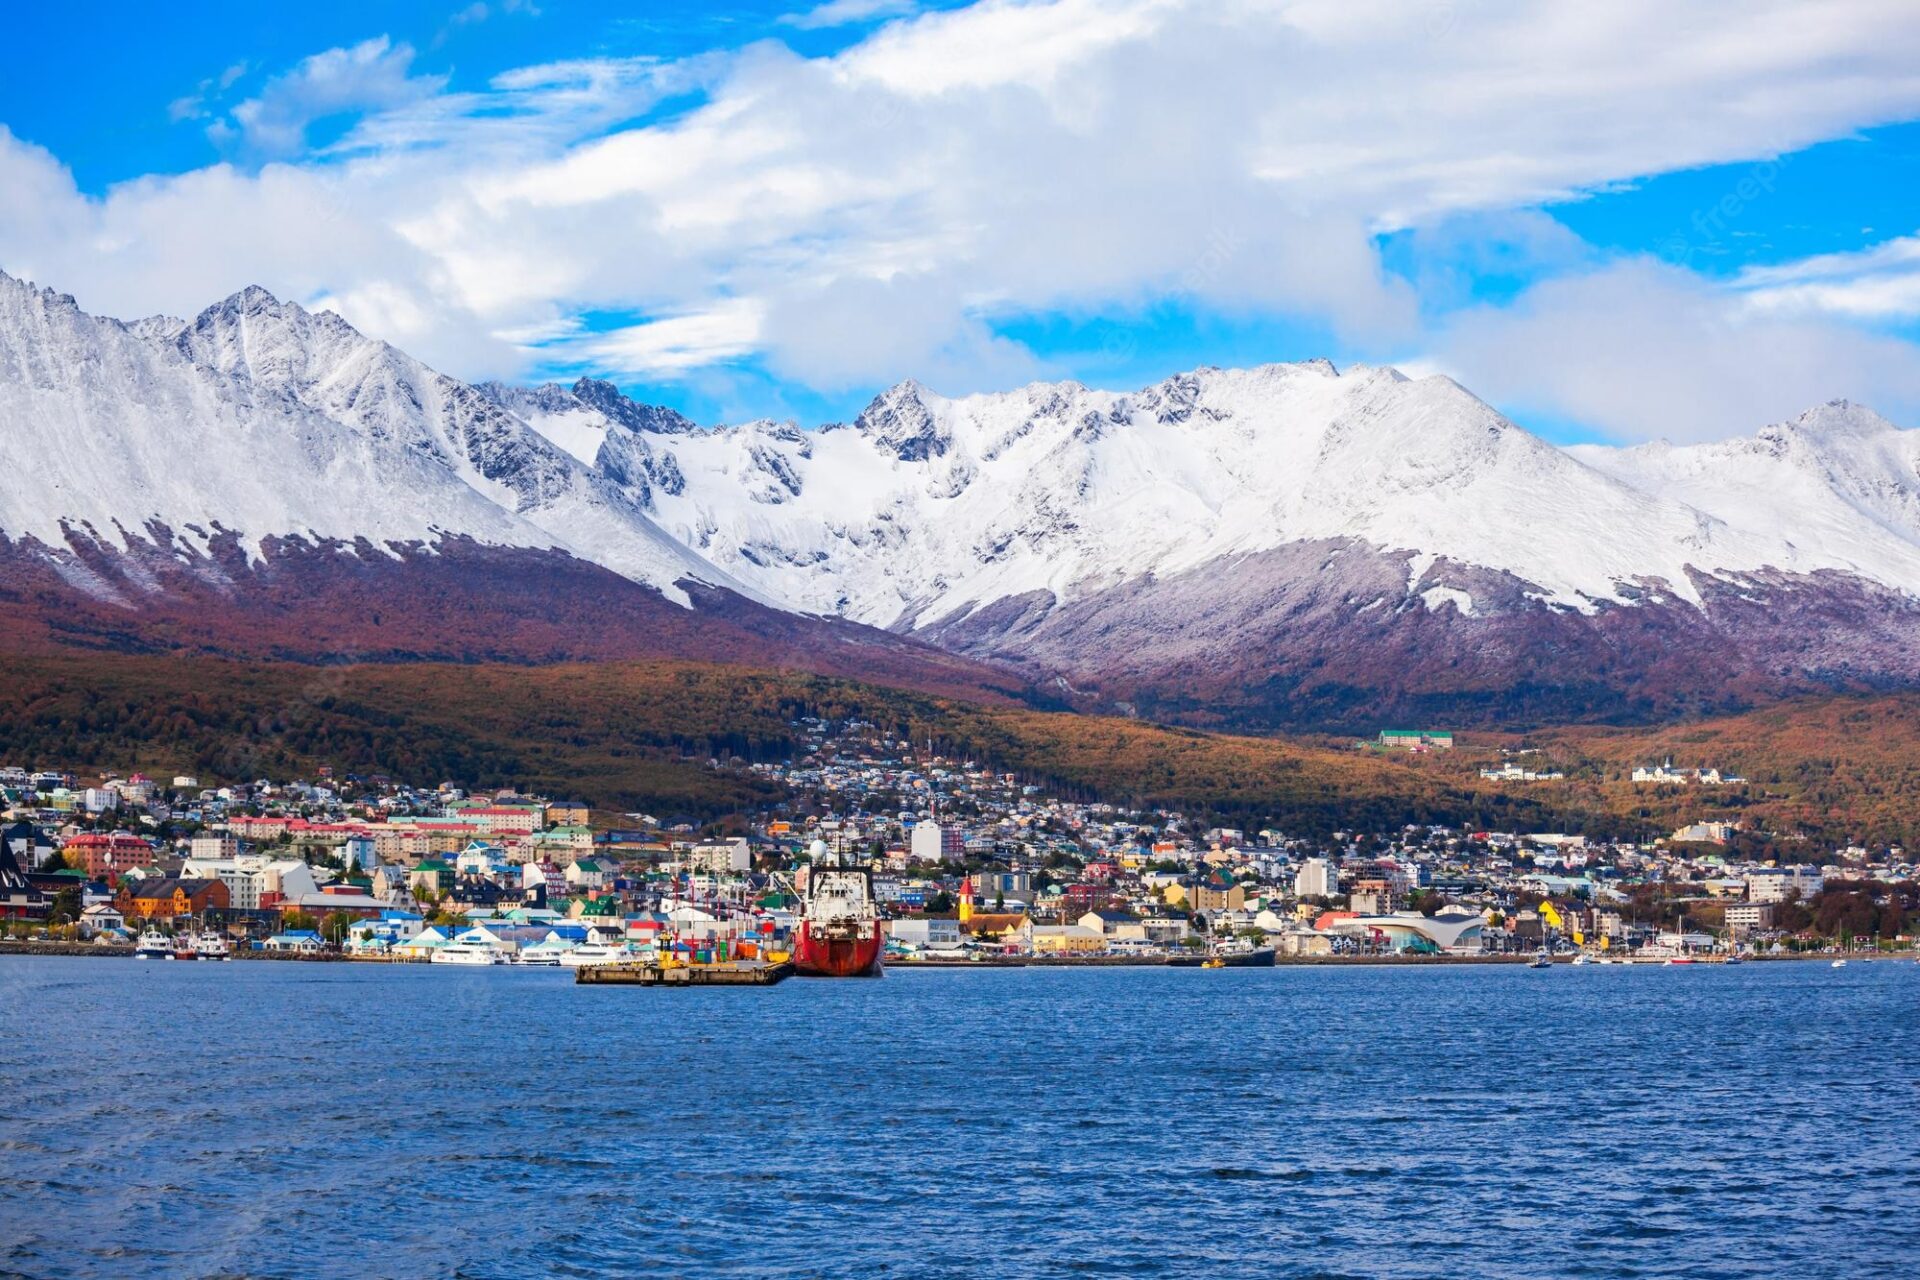 Ushuaia: conheça a cidade do Fim do Mundo